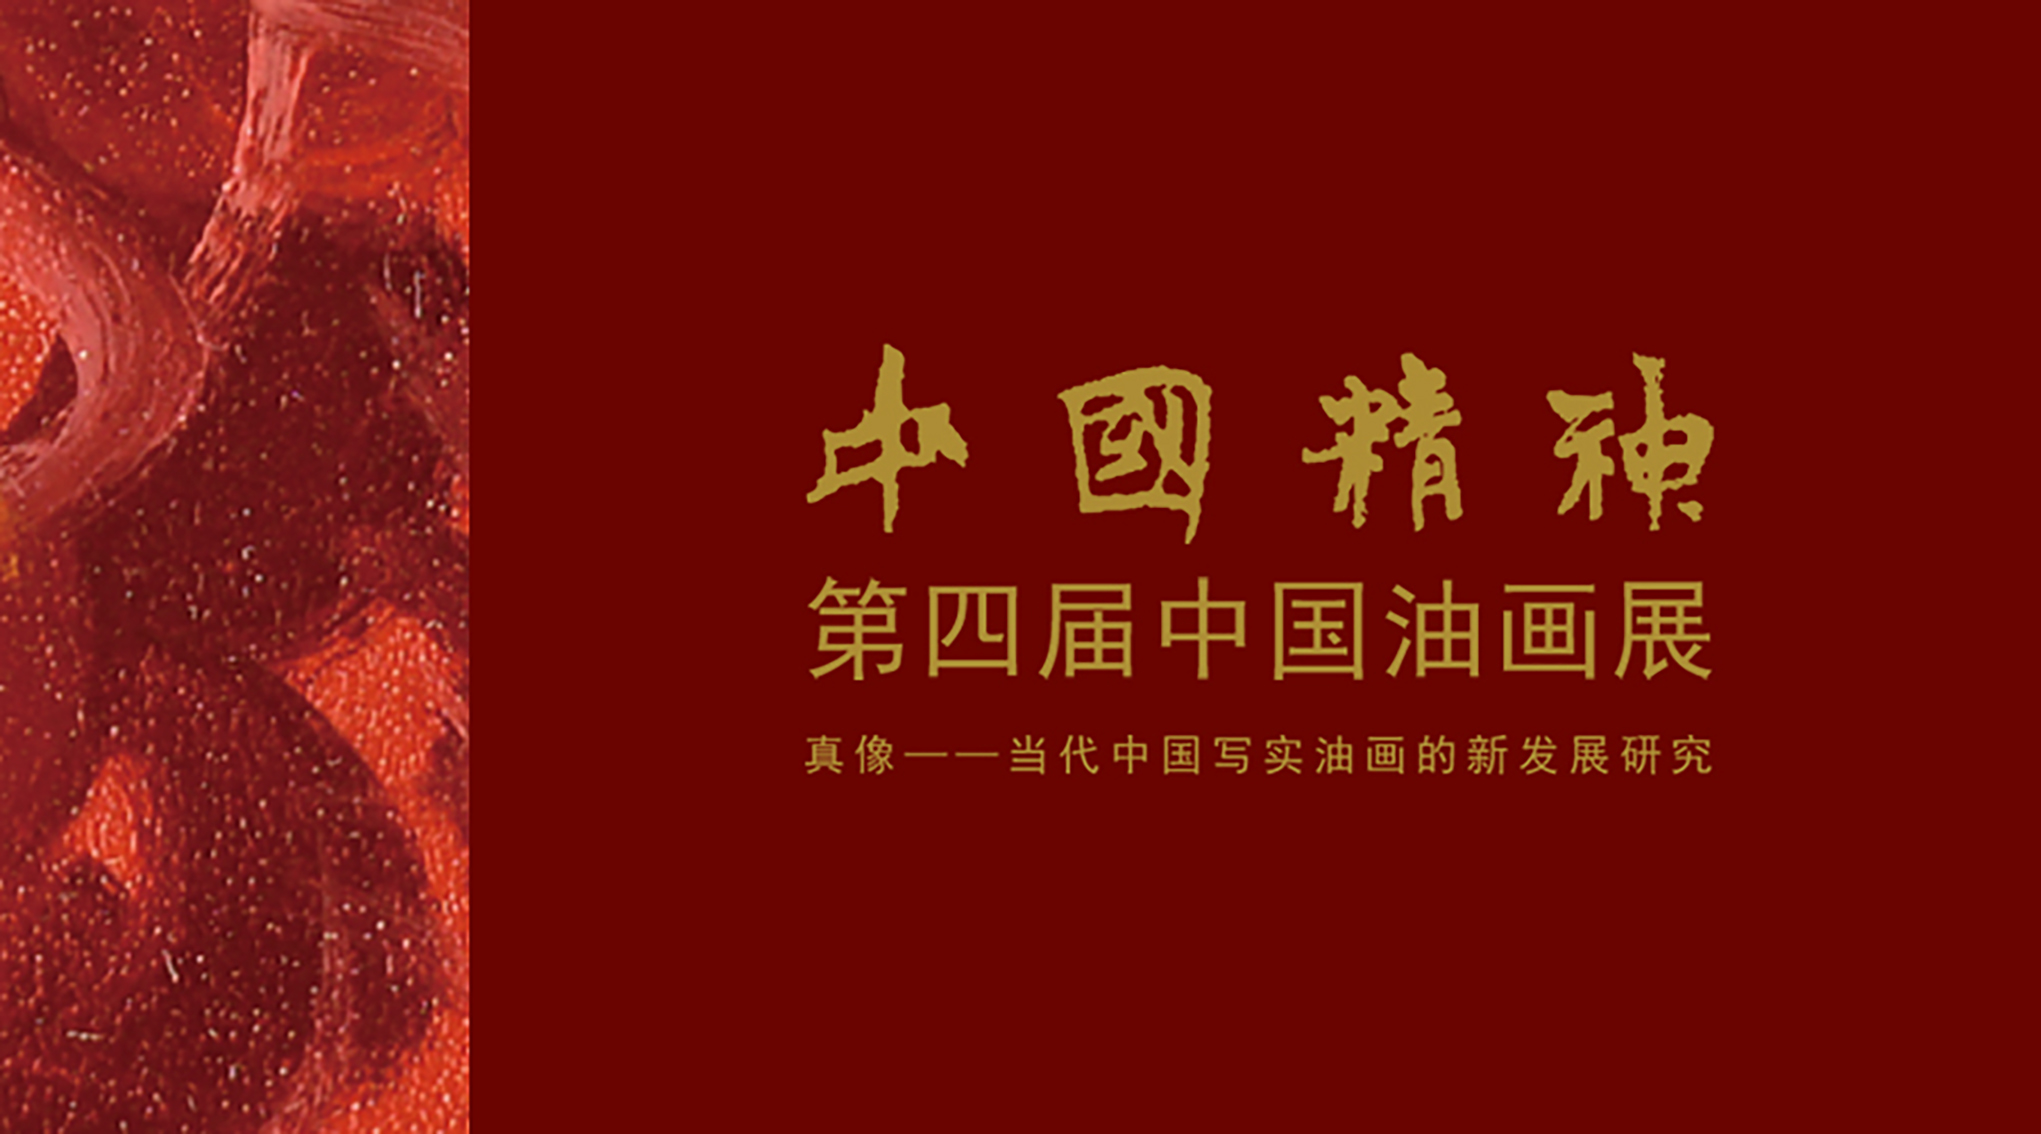 中国精神—第四届中国油画展 真像—当代中国写实油画的新发展研究